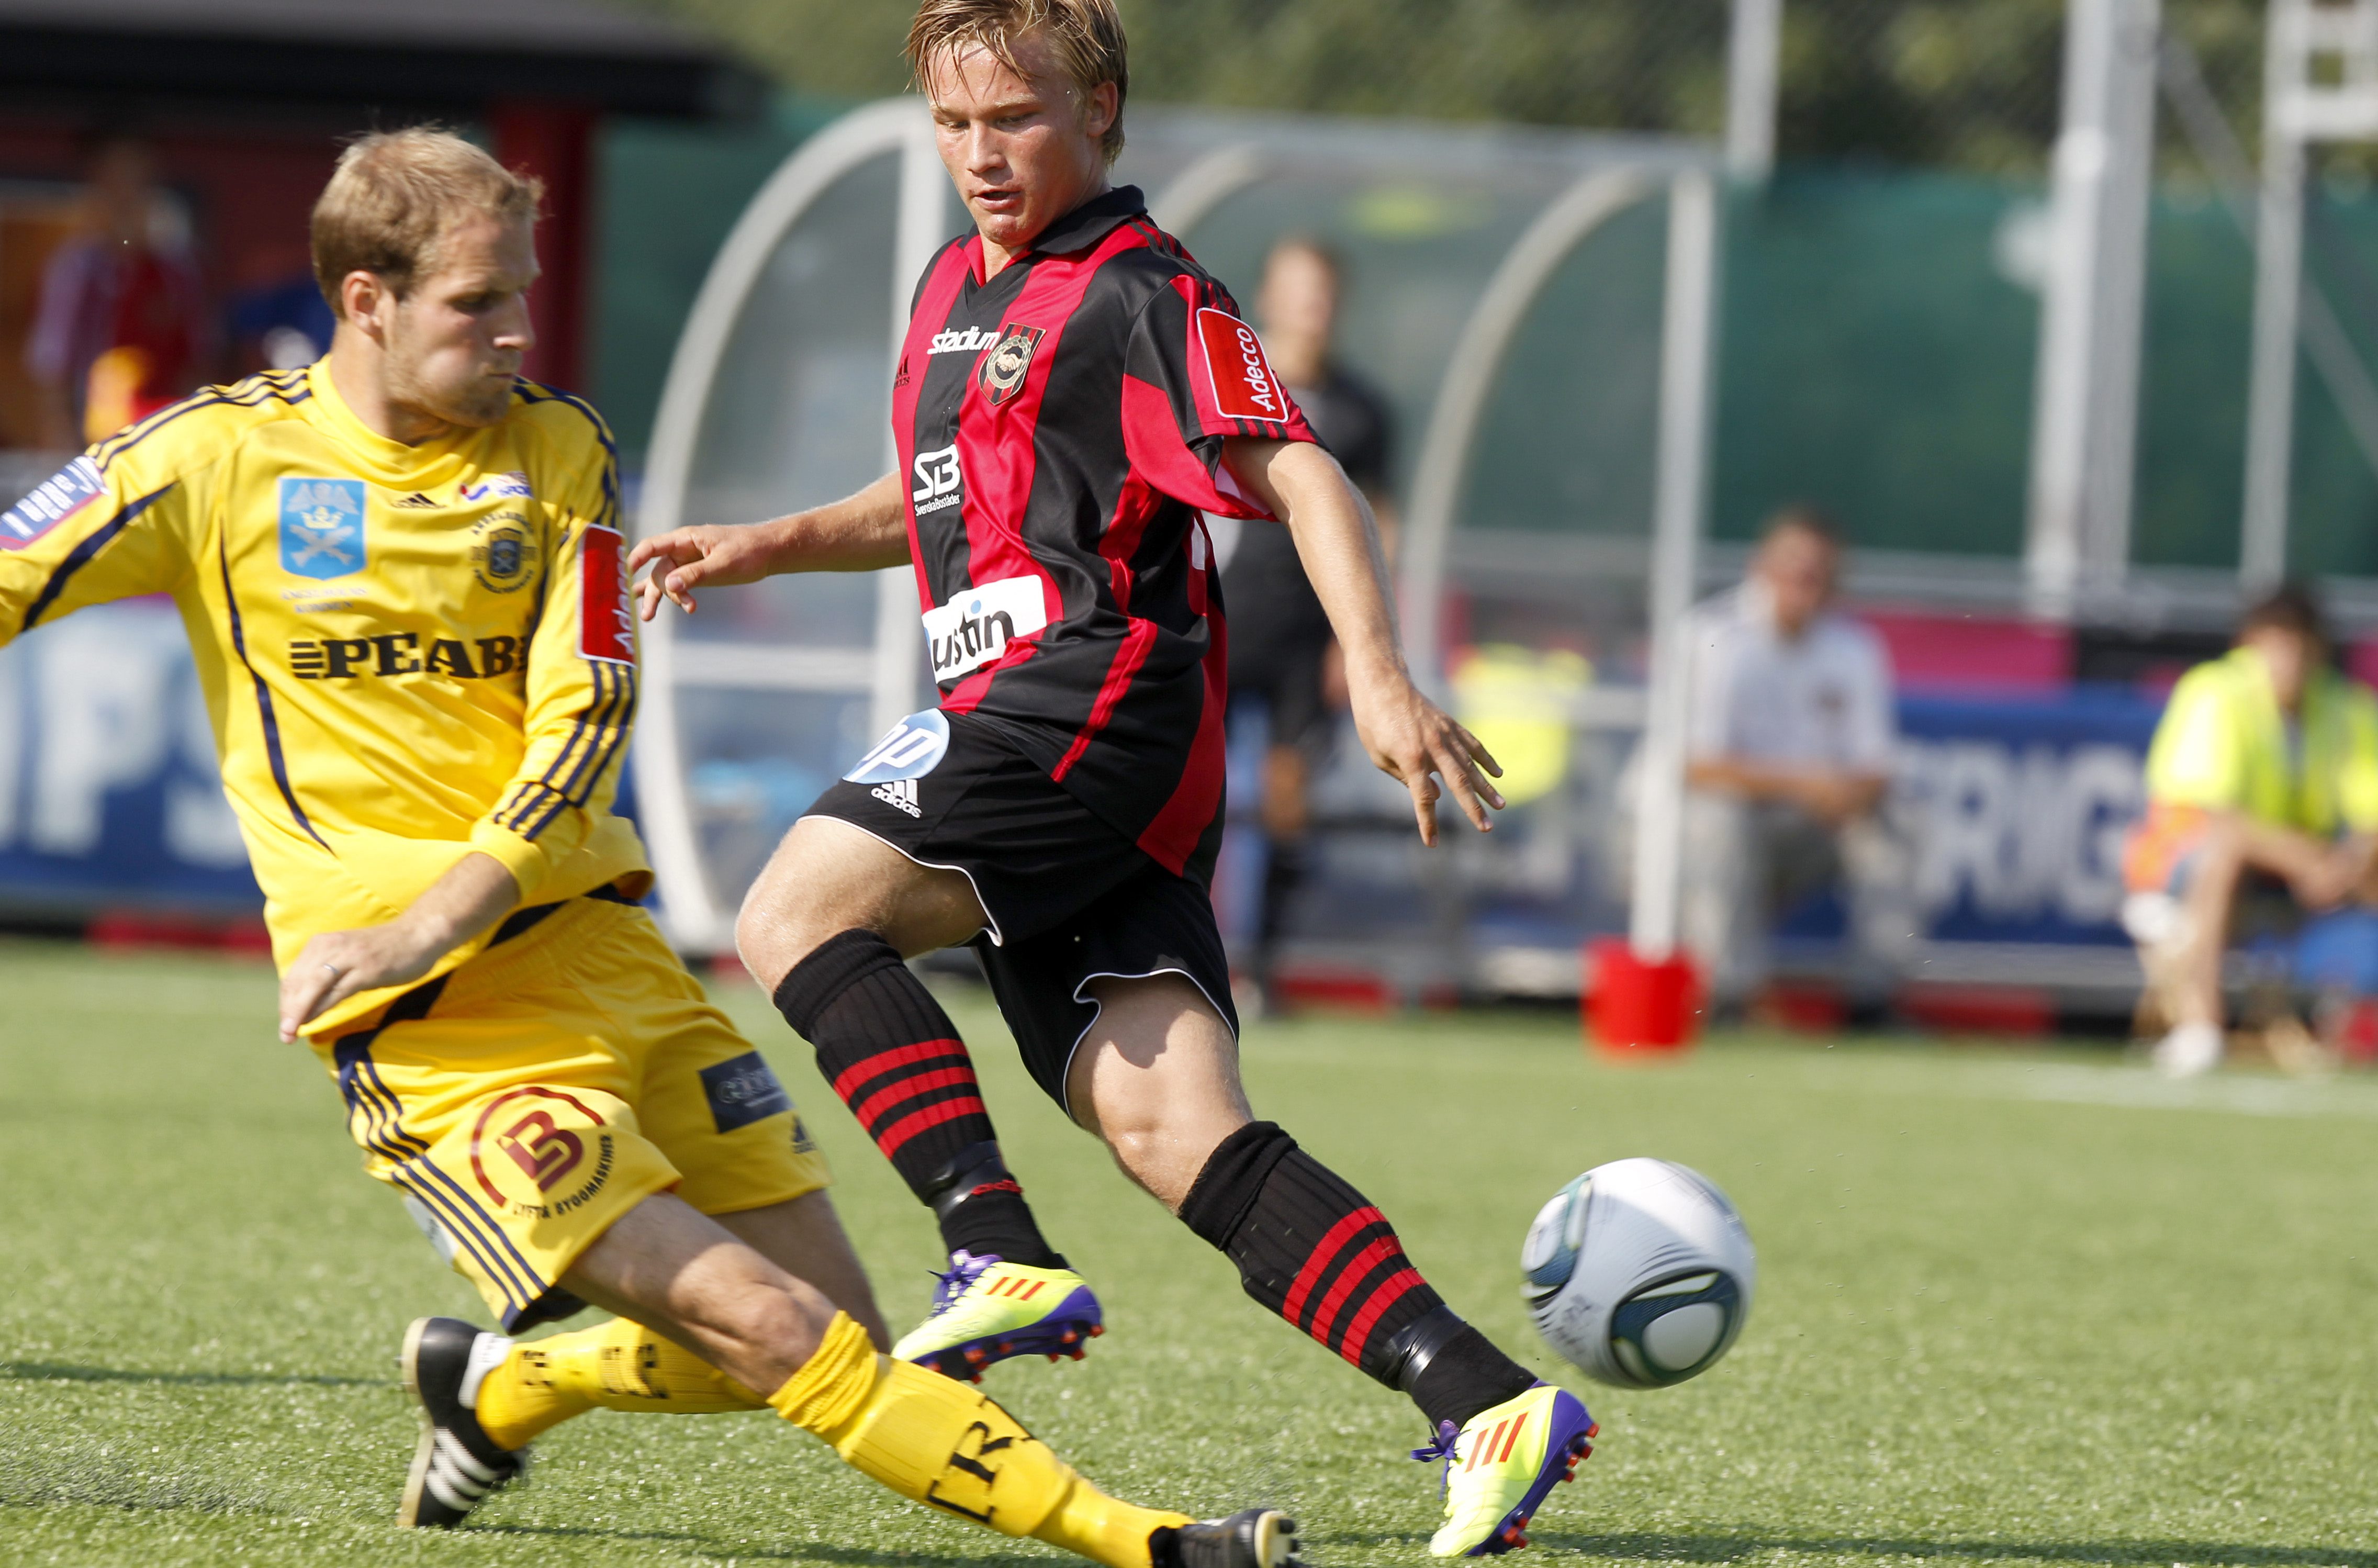 Förra säsongen dominerade Bärkroth superettan och blev utsedd till årets spelare i Brommapojkarna. 